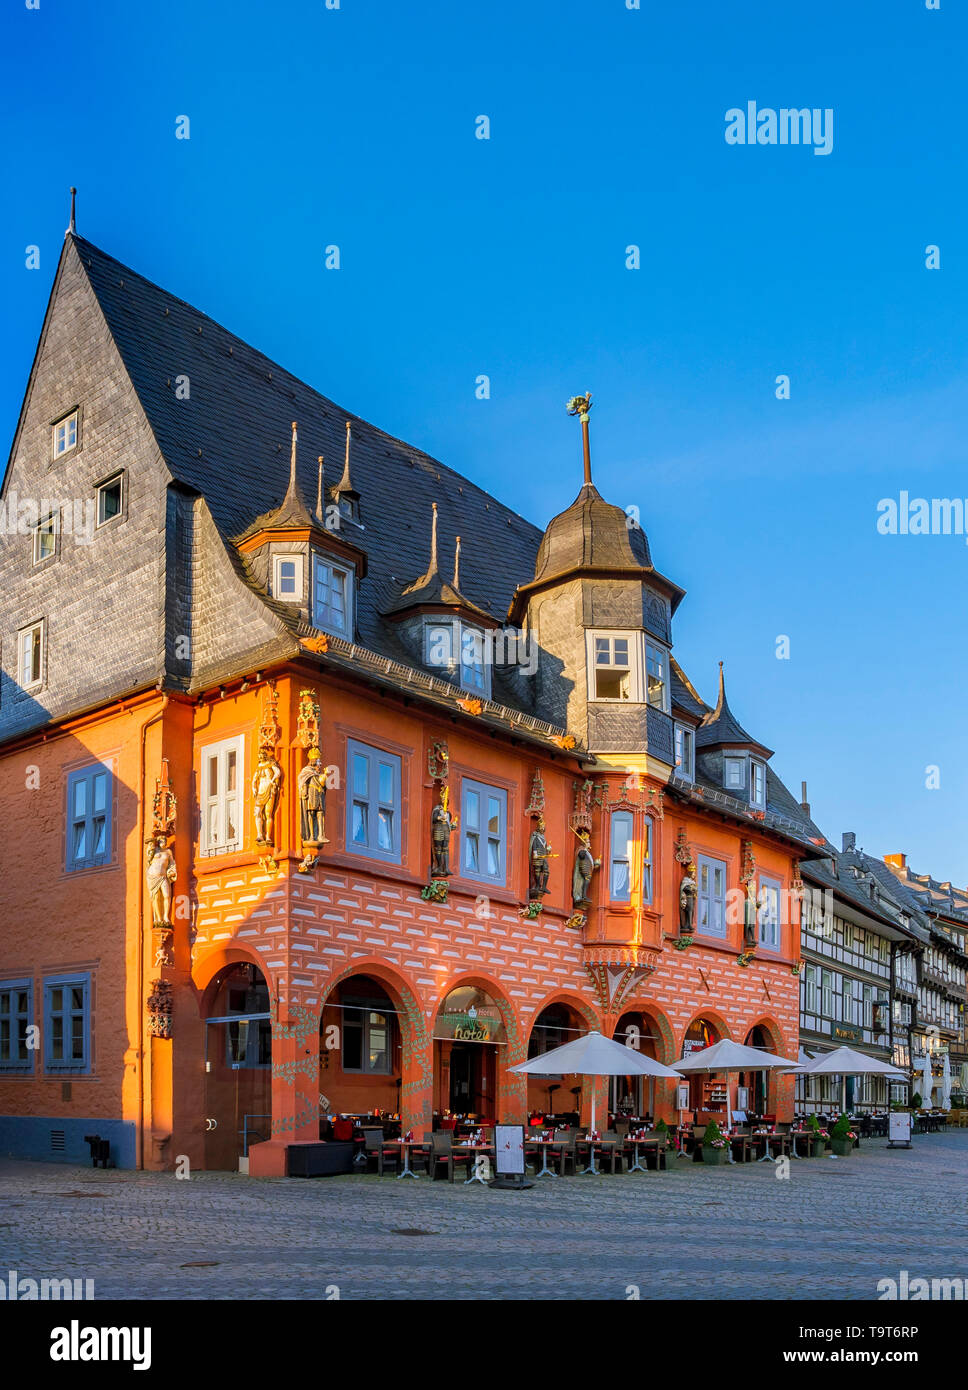 Site du patrimoine mondial de l'UNESCO-Hôtel Kaiserworth (maison de la guilde des tabliers) sur le marché en Goslar Basse-saxe Allemagne, Europe, UNESCO-Welterbestätte K Banque D'Images